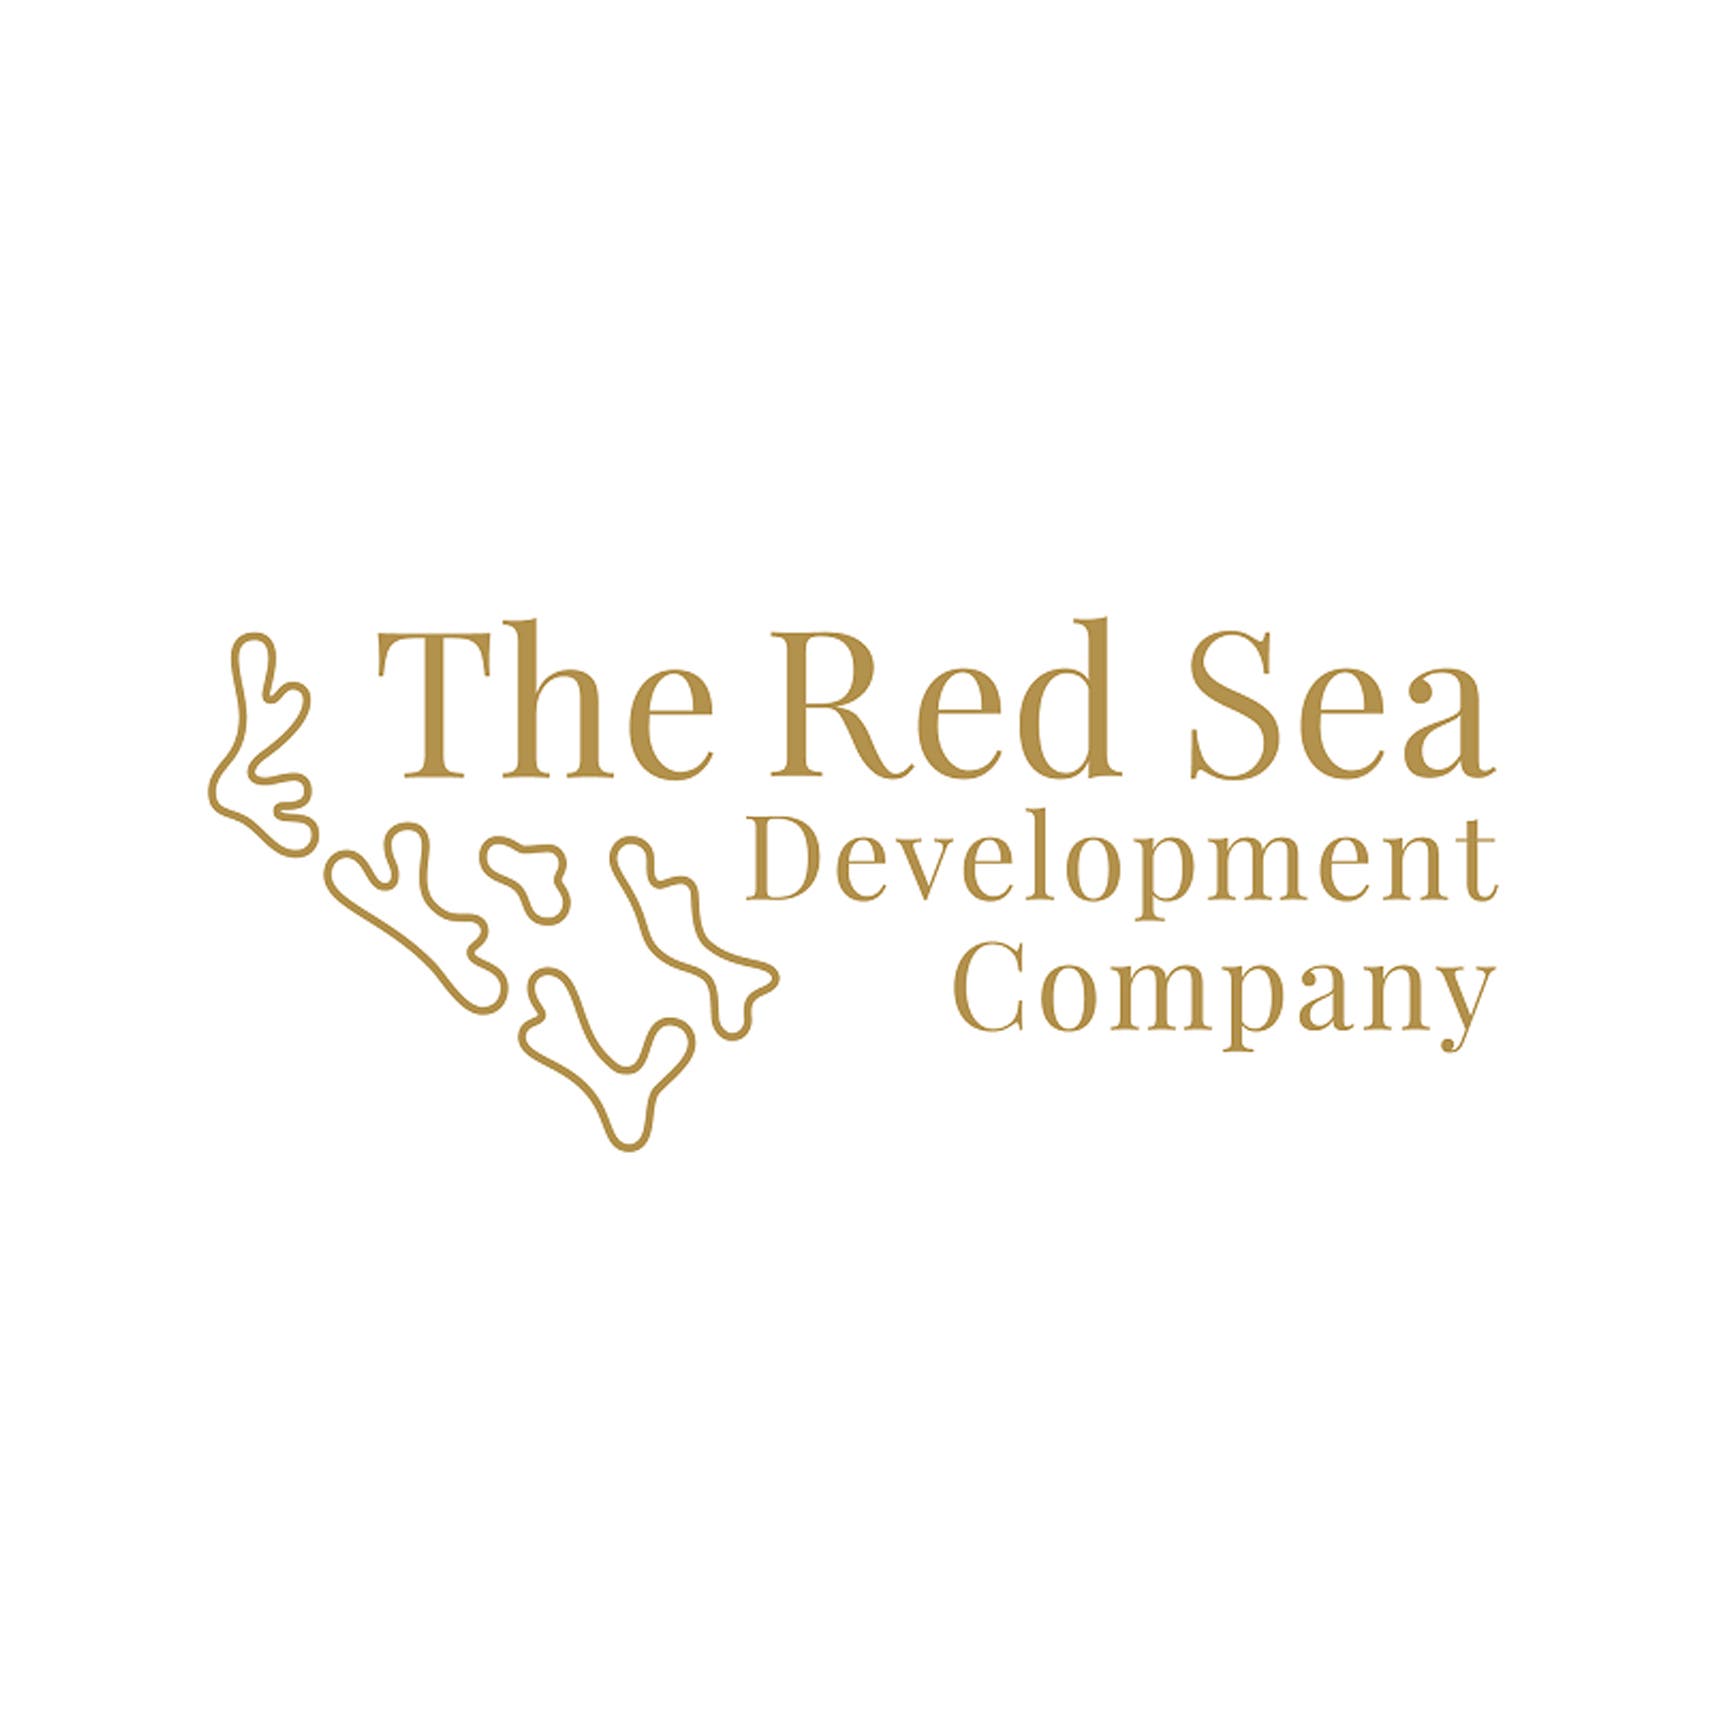 "مشروع البحر الأحمر" الأول بالشرق الأوسط يستكمل أول مرحلة لشهادة LEED